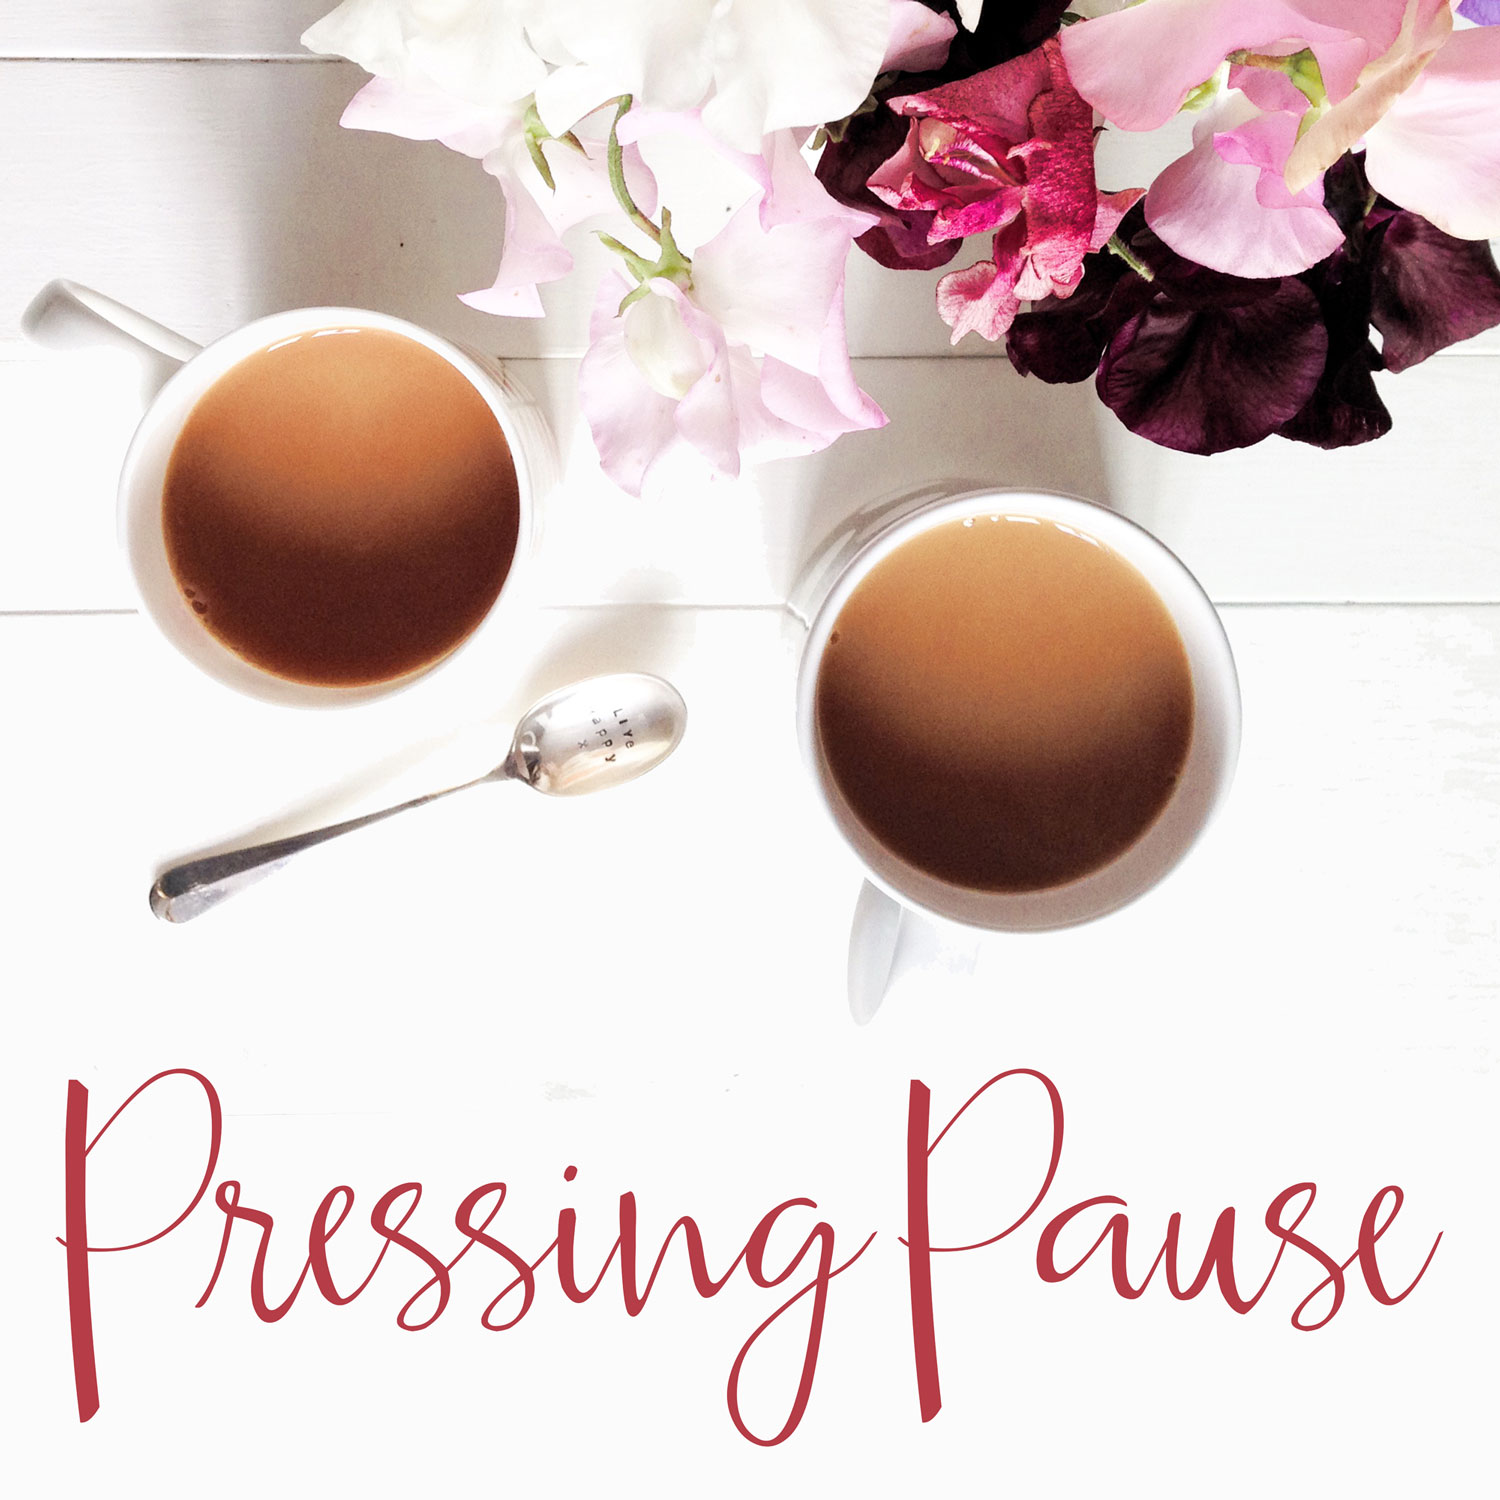 Pressing-Pause-Thumbnail2